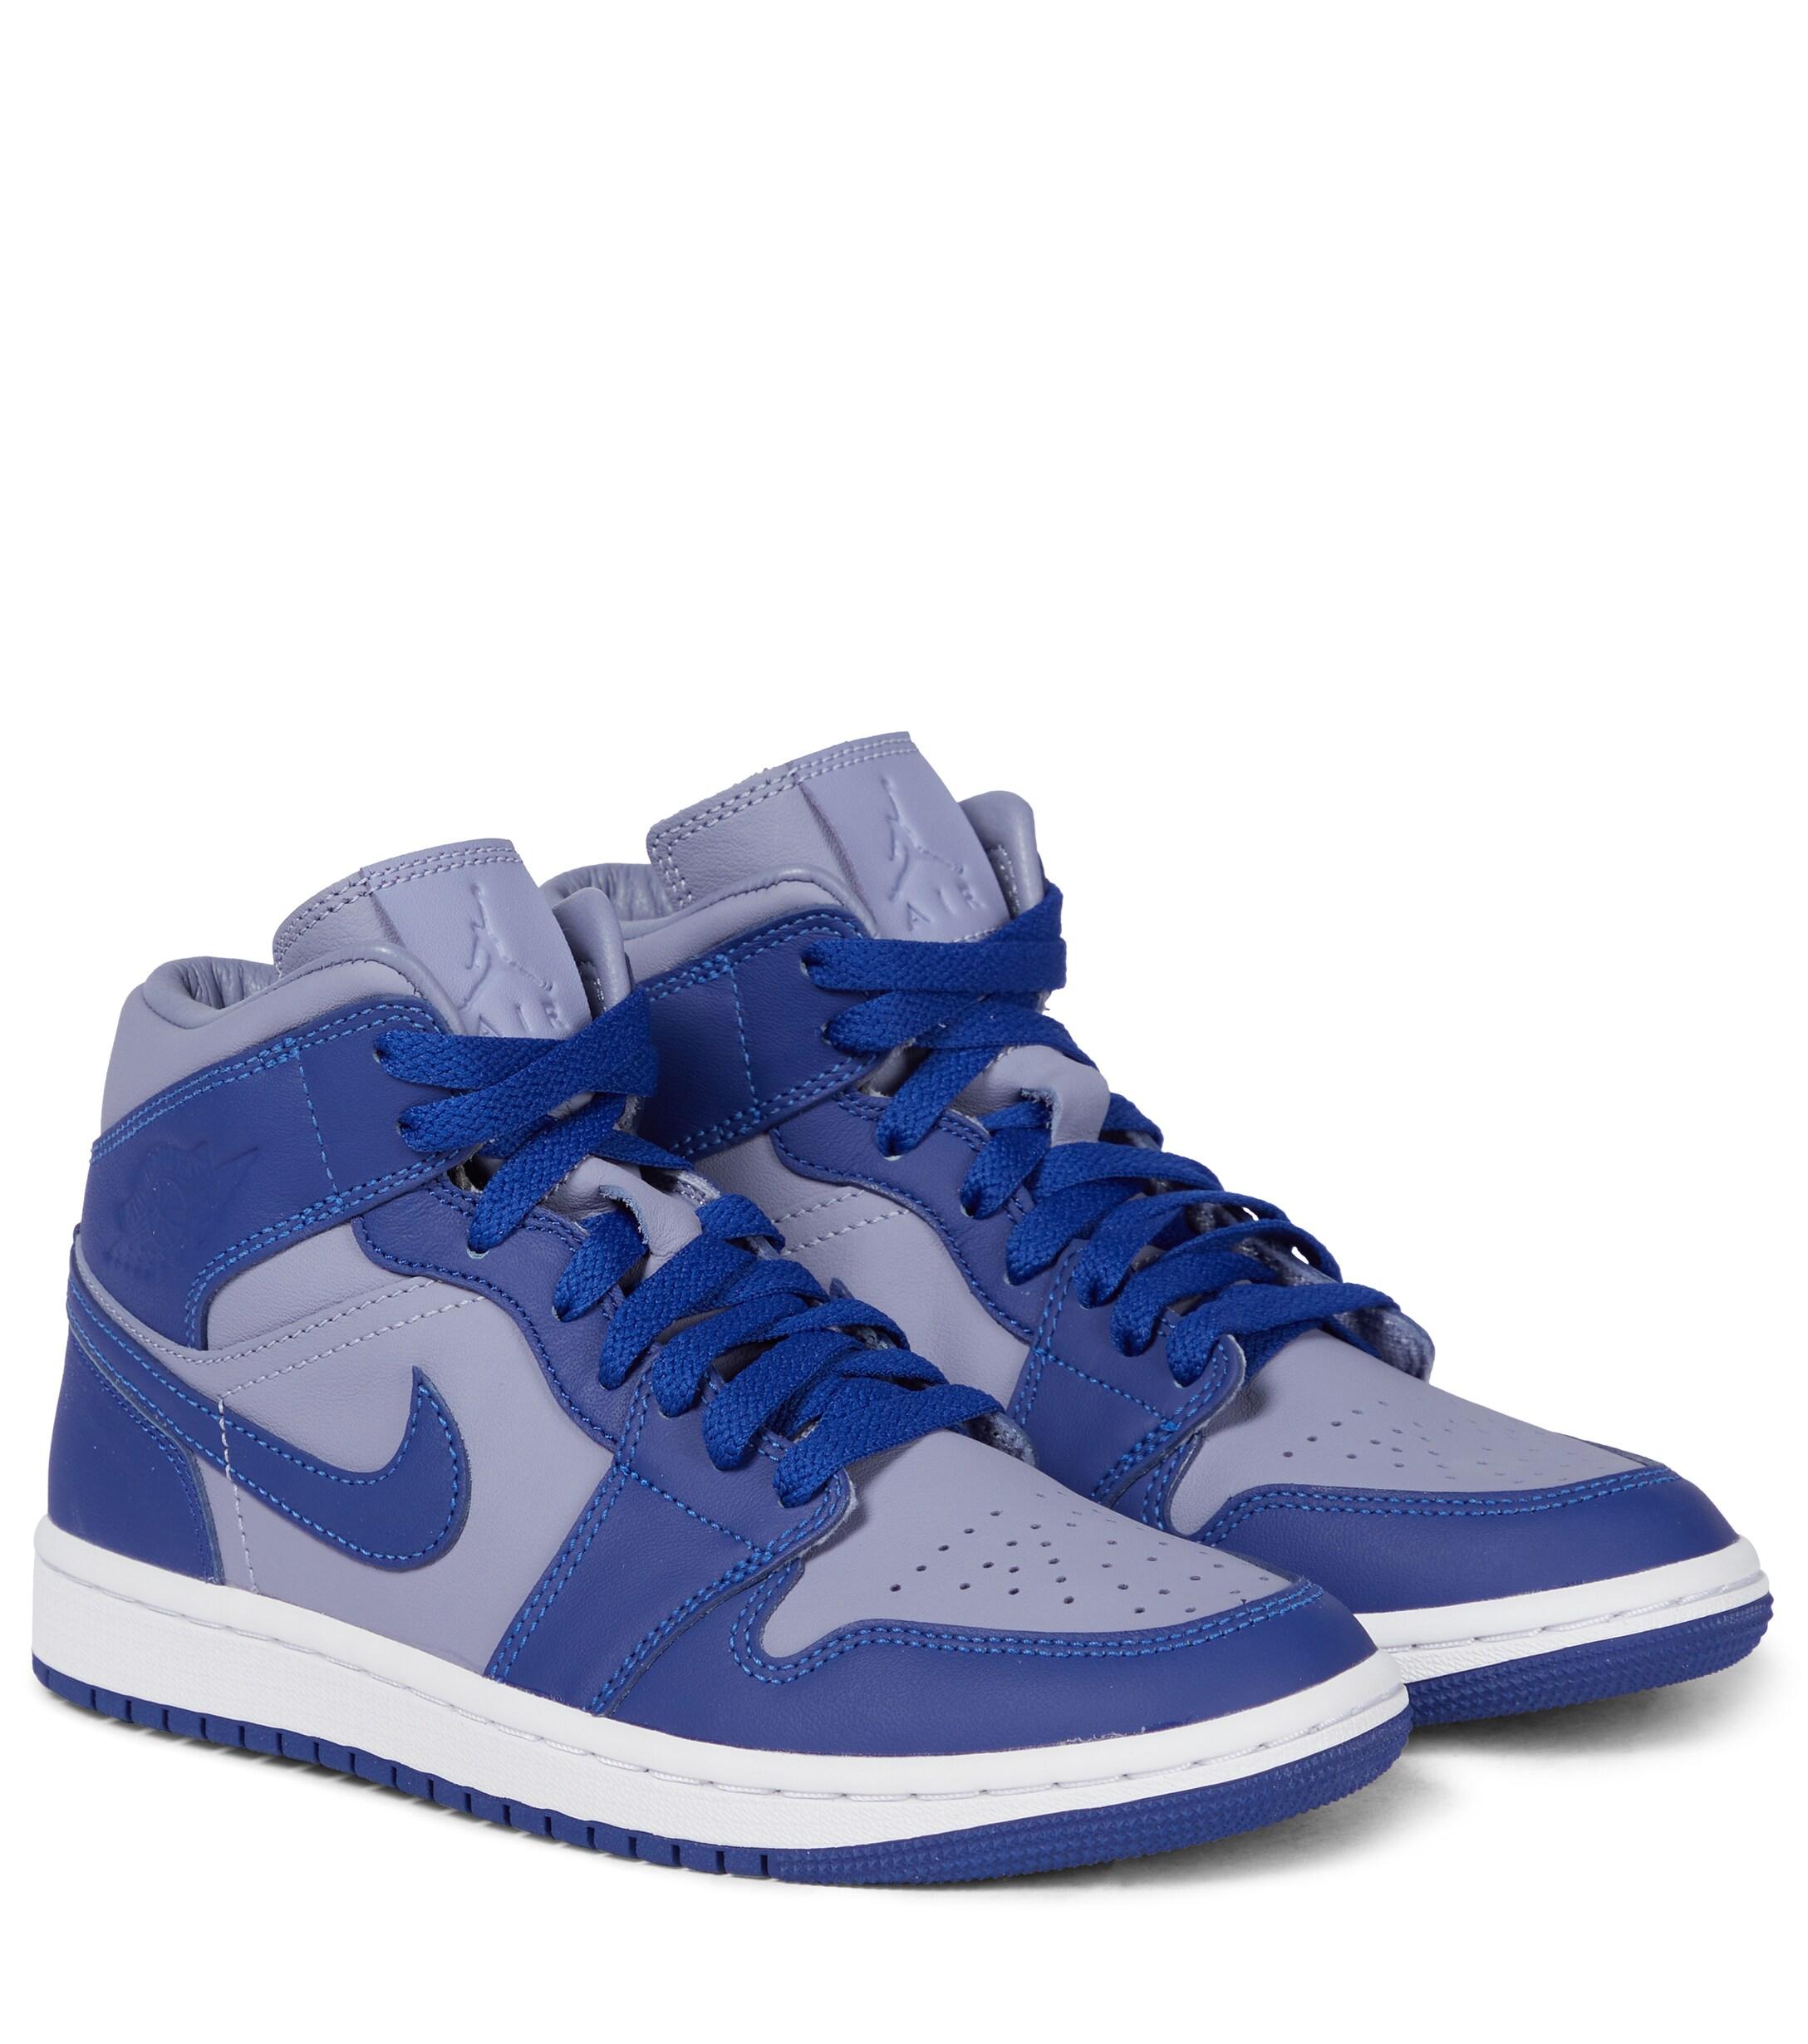 Nike Air Jordan 1 Suede Sneakers in Blue | Lyst Australia